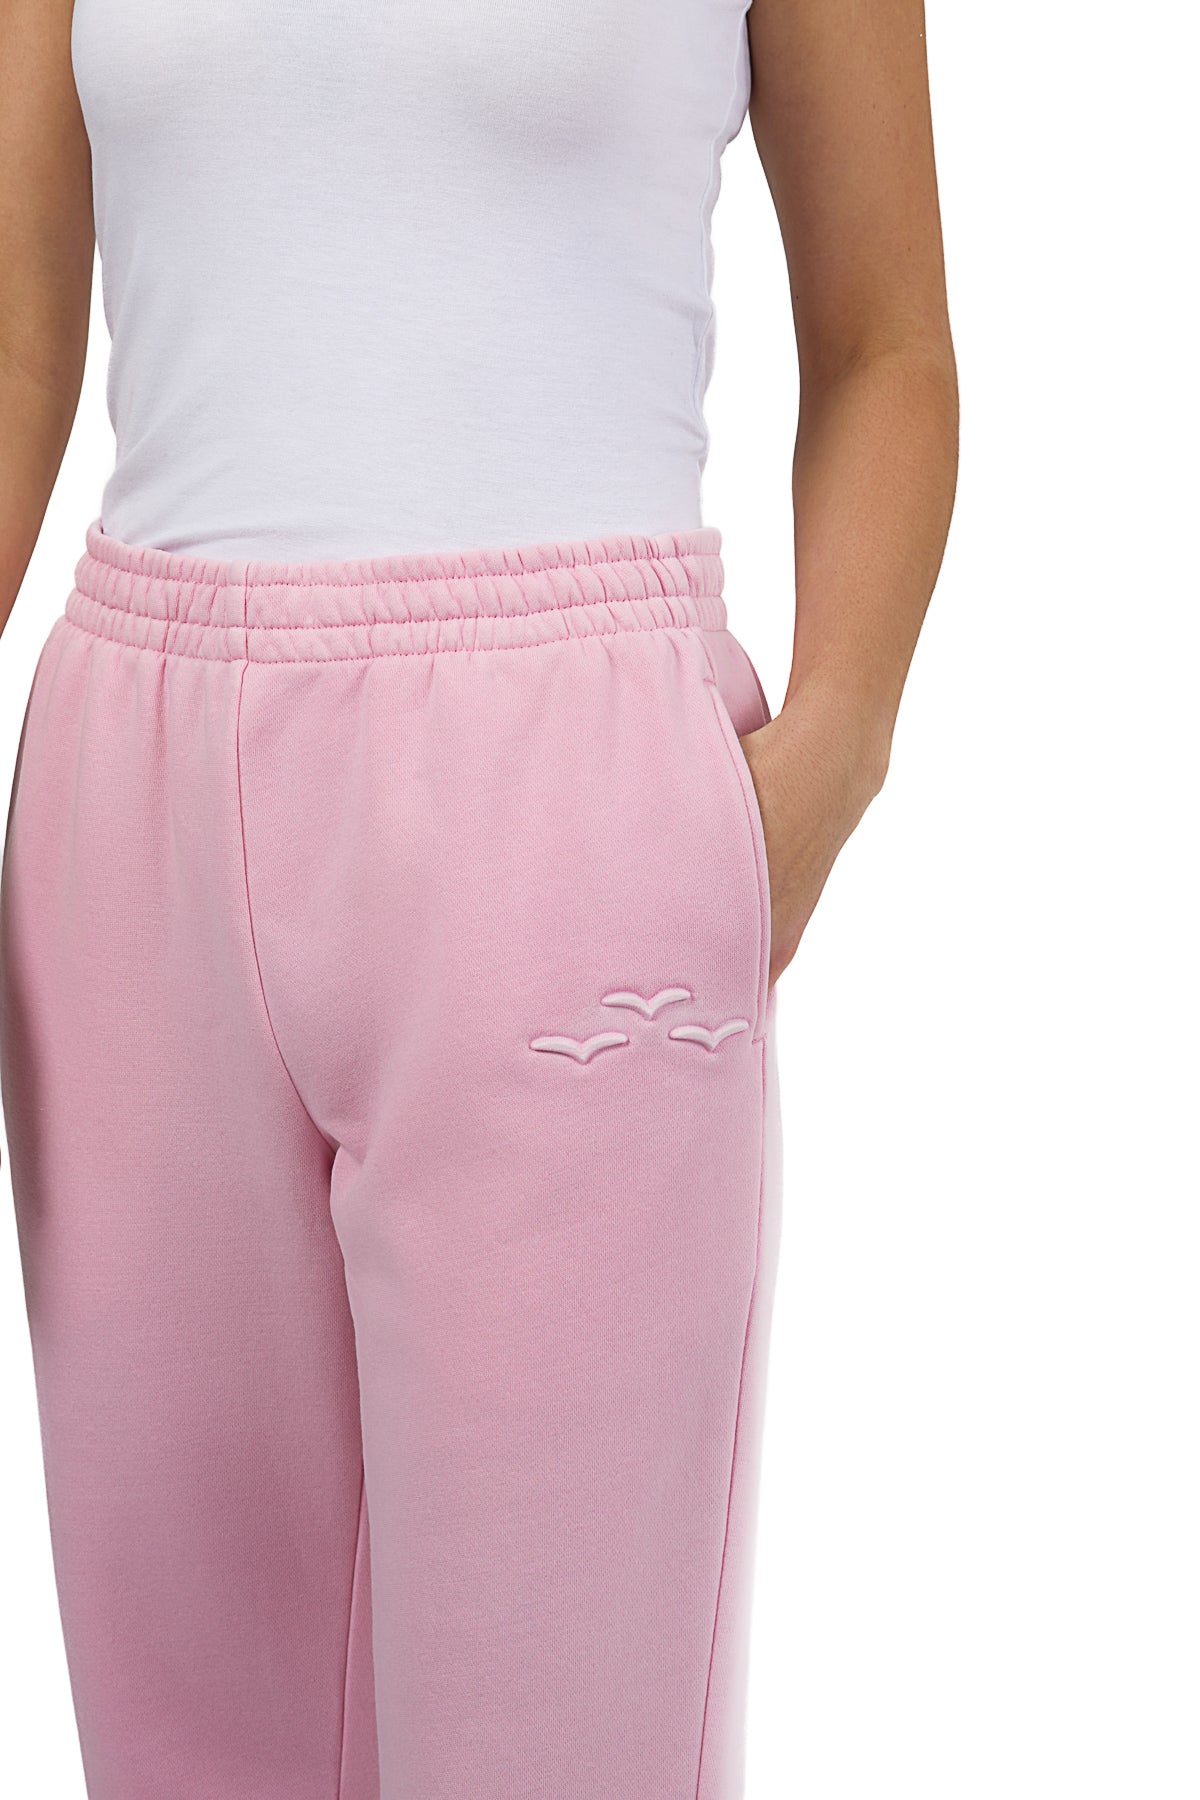 Capri Ruffle Sweatpants Girl's Bubblegum Pink – Futurepreneurs